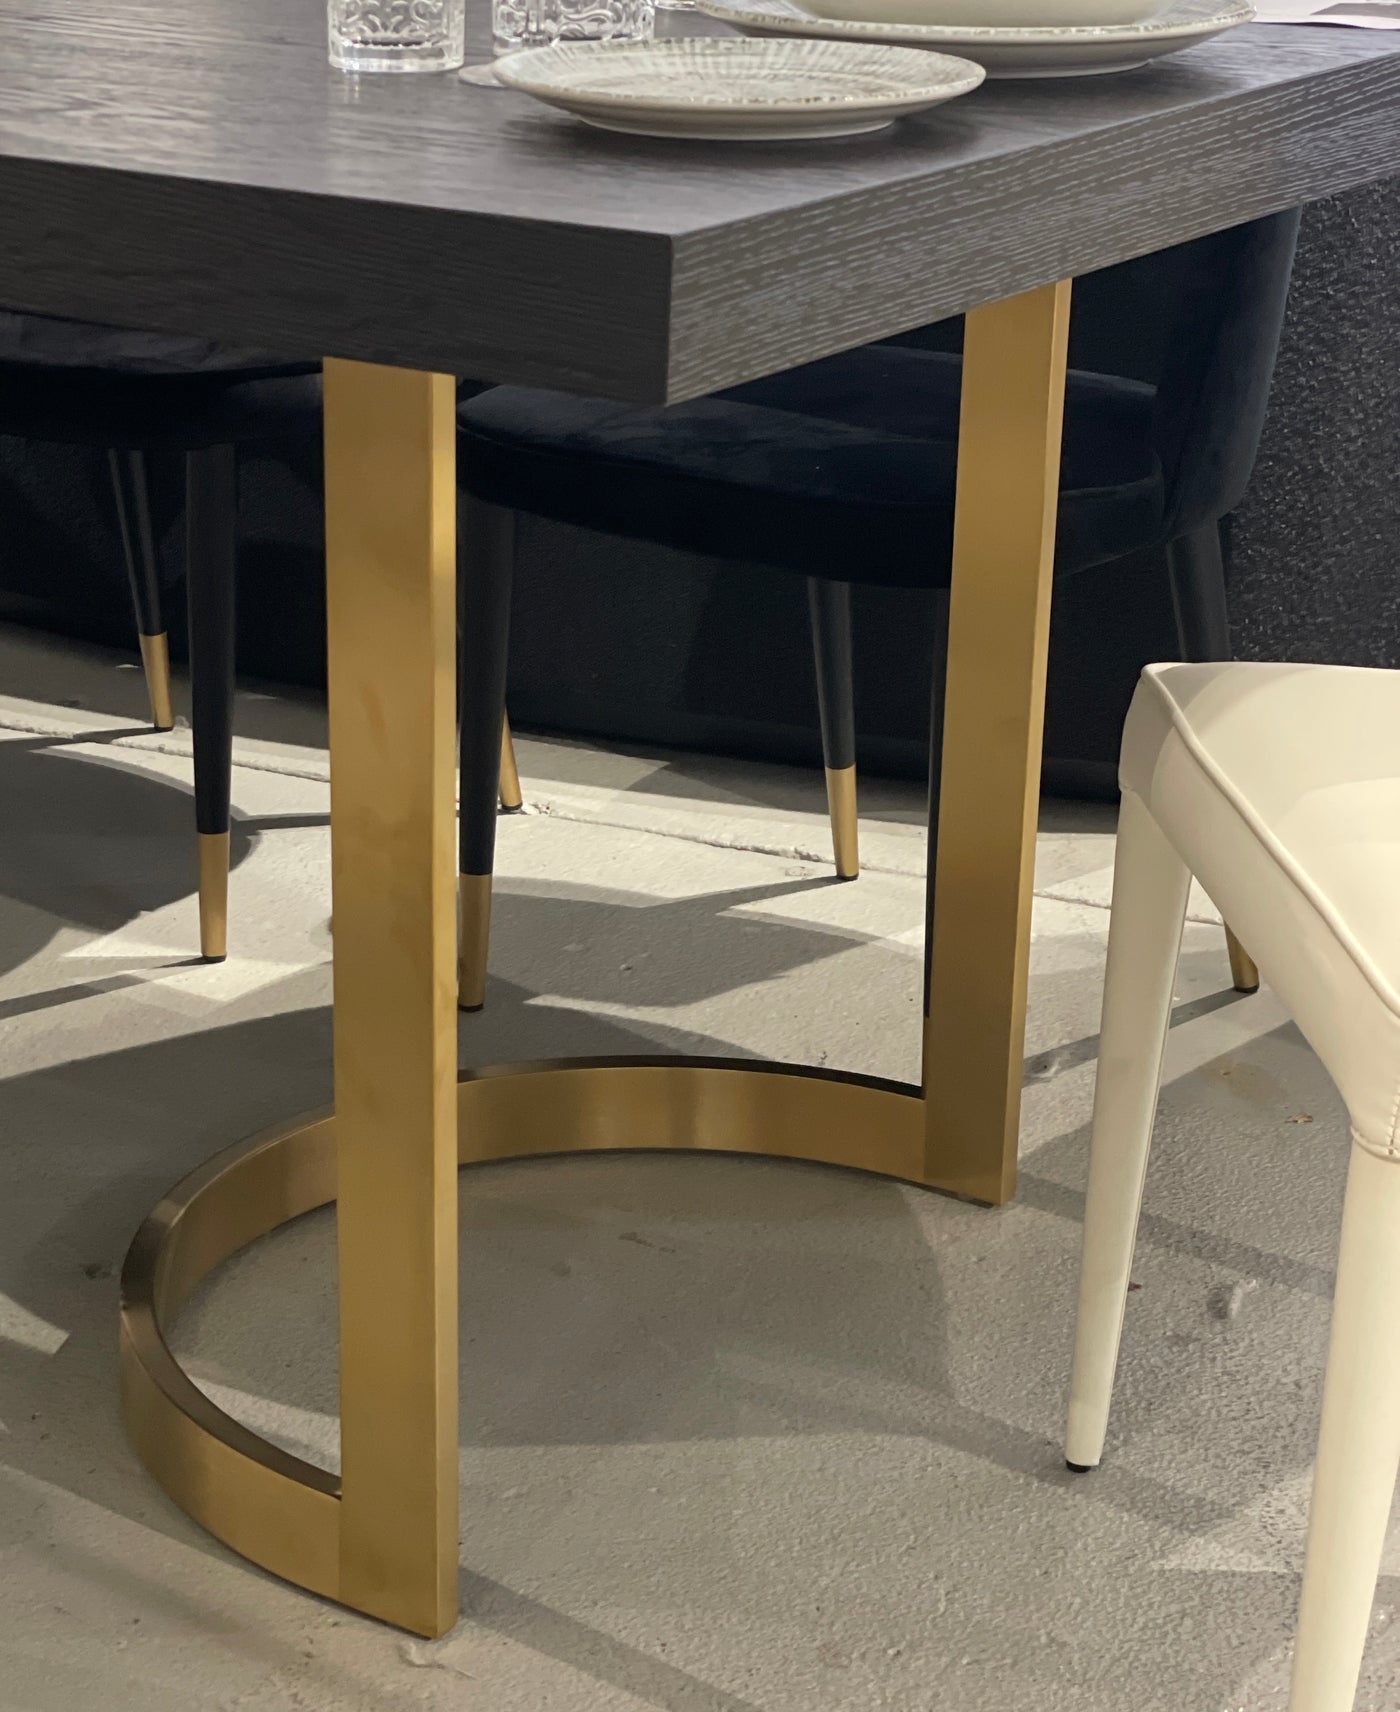 Prado Dining Table - 2.4m - Future Classics Furniture